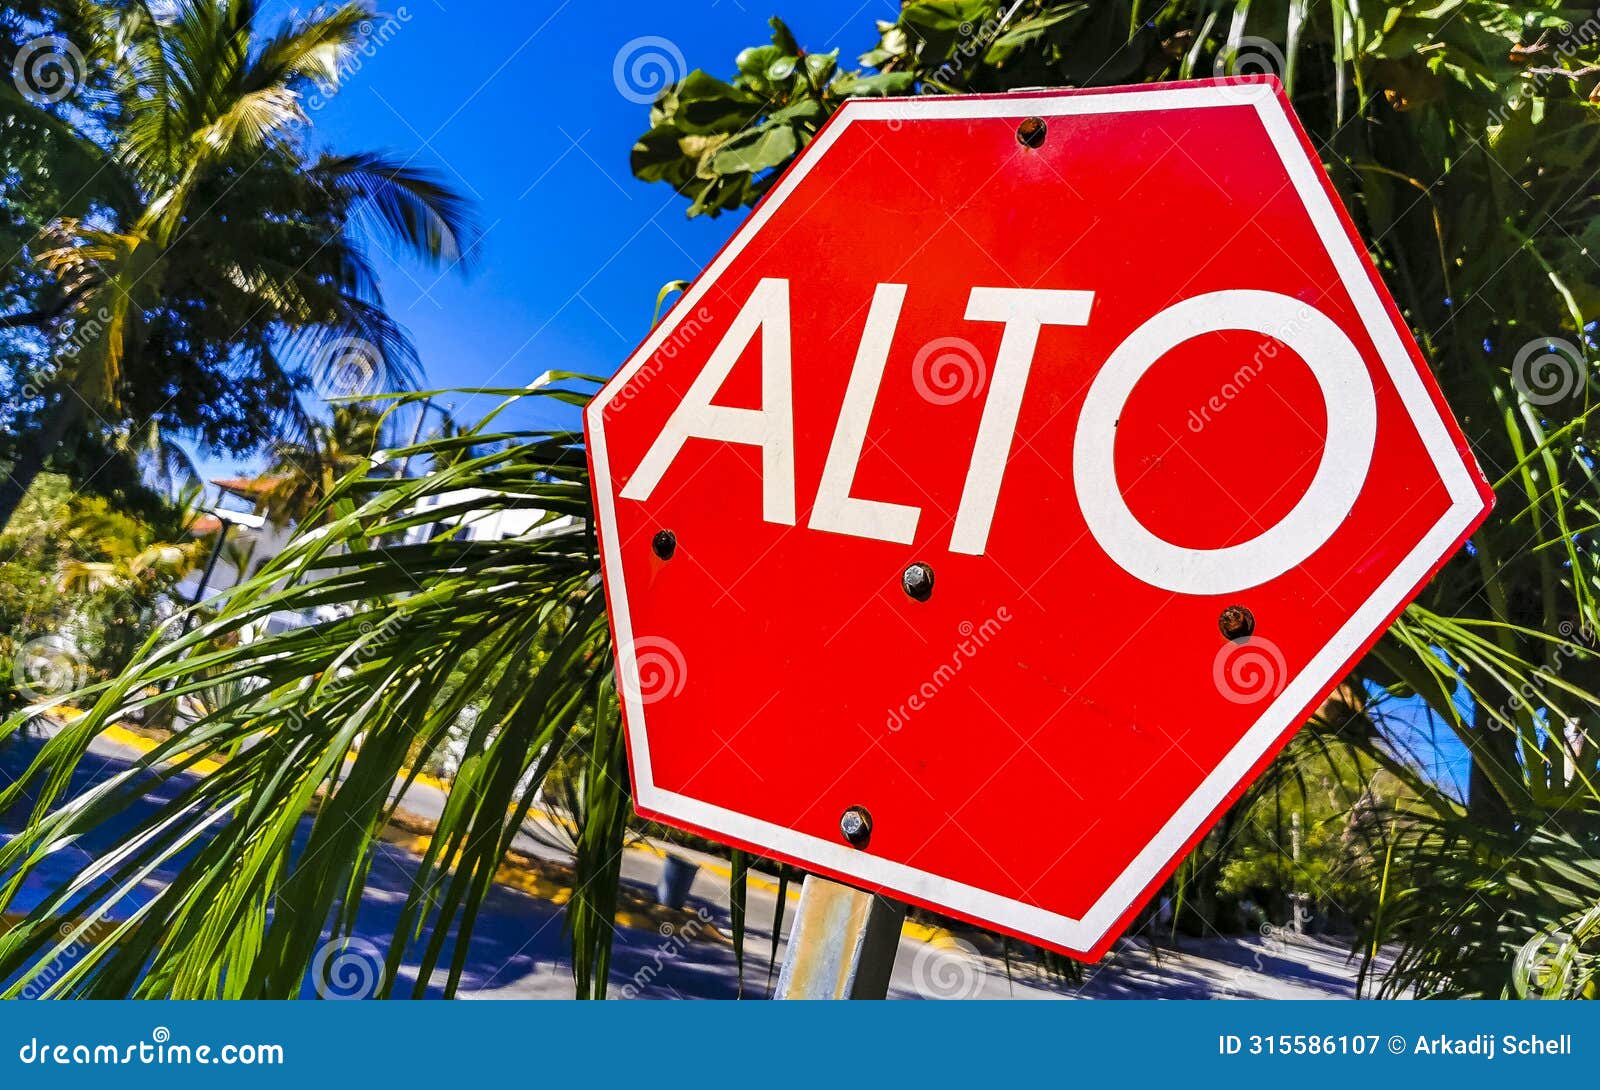 stop sign alto in spanish in puerto escondido mexico